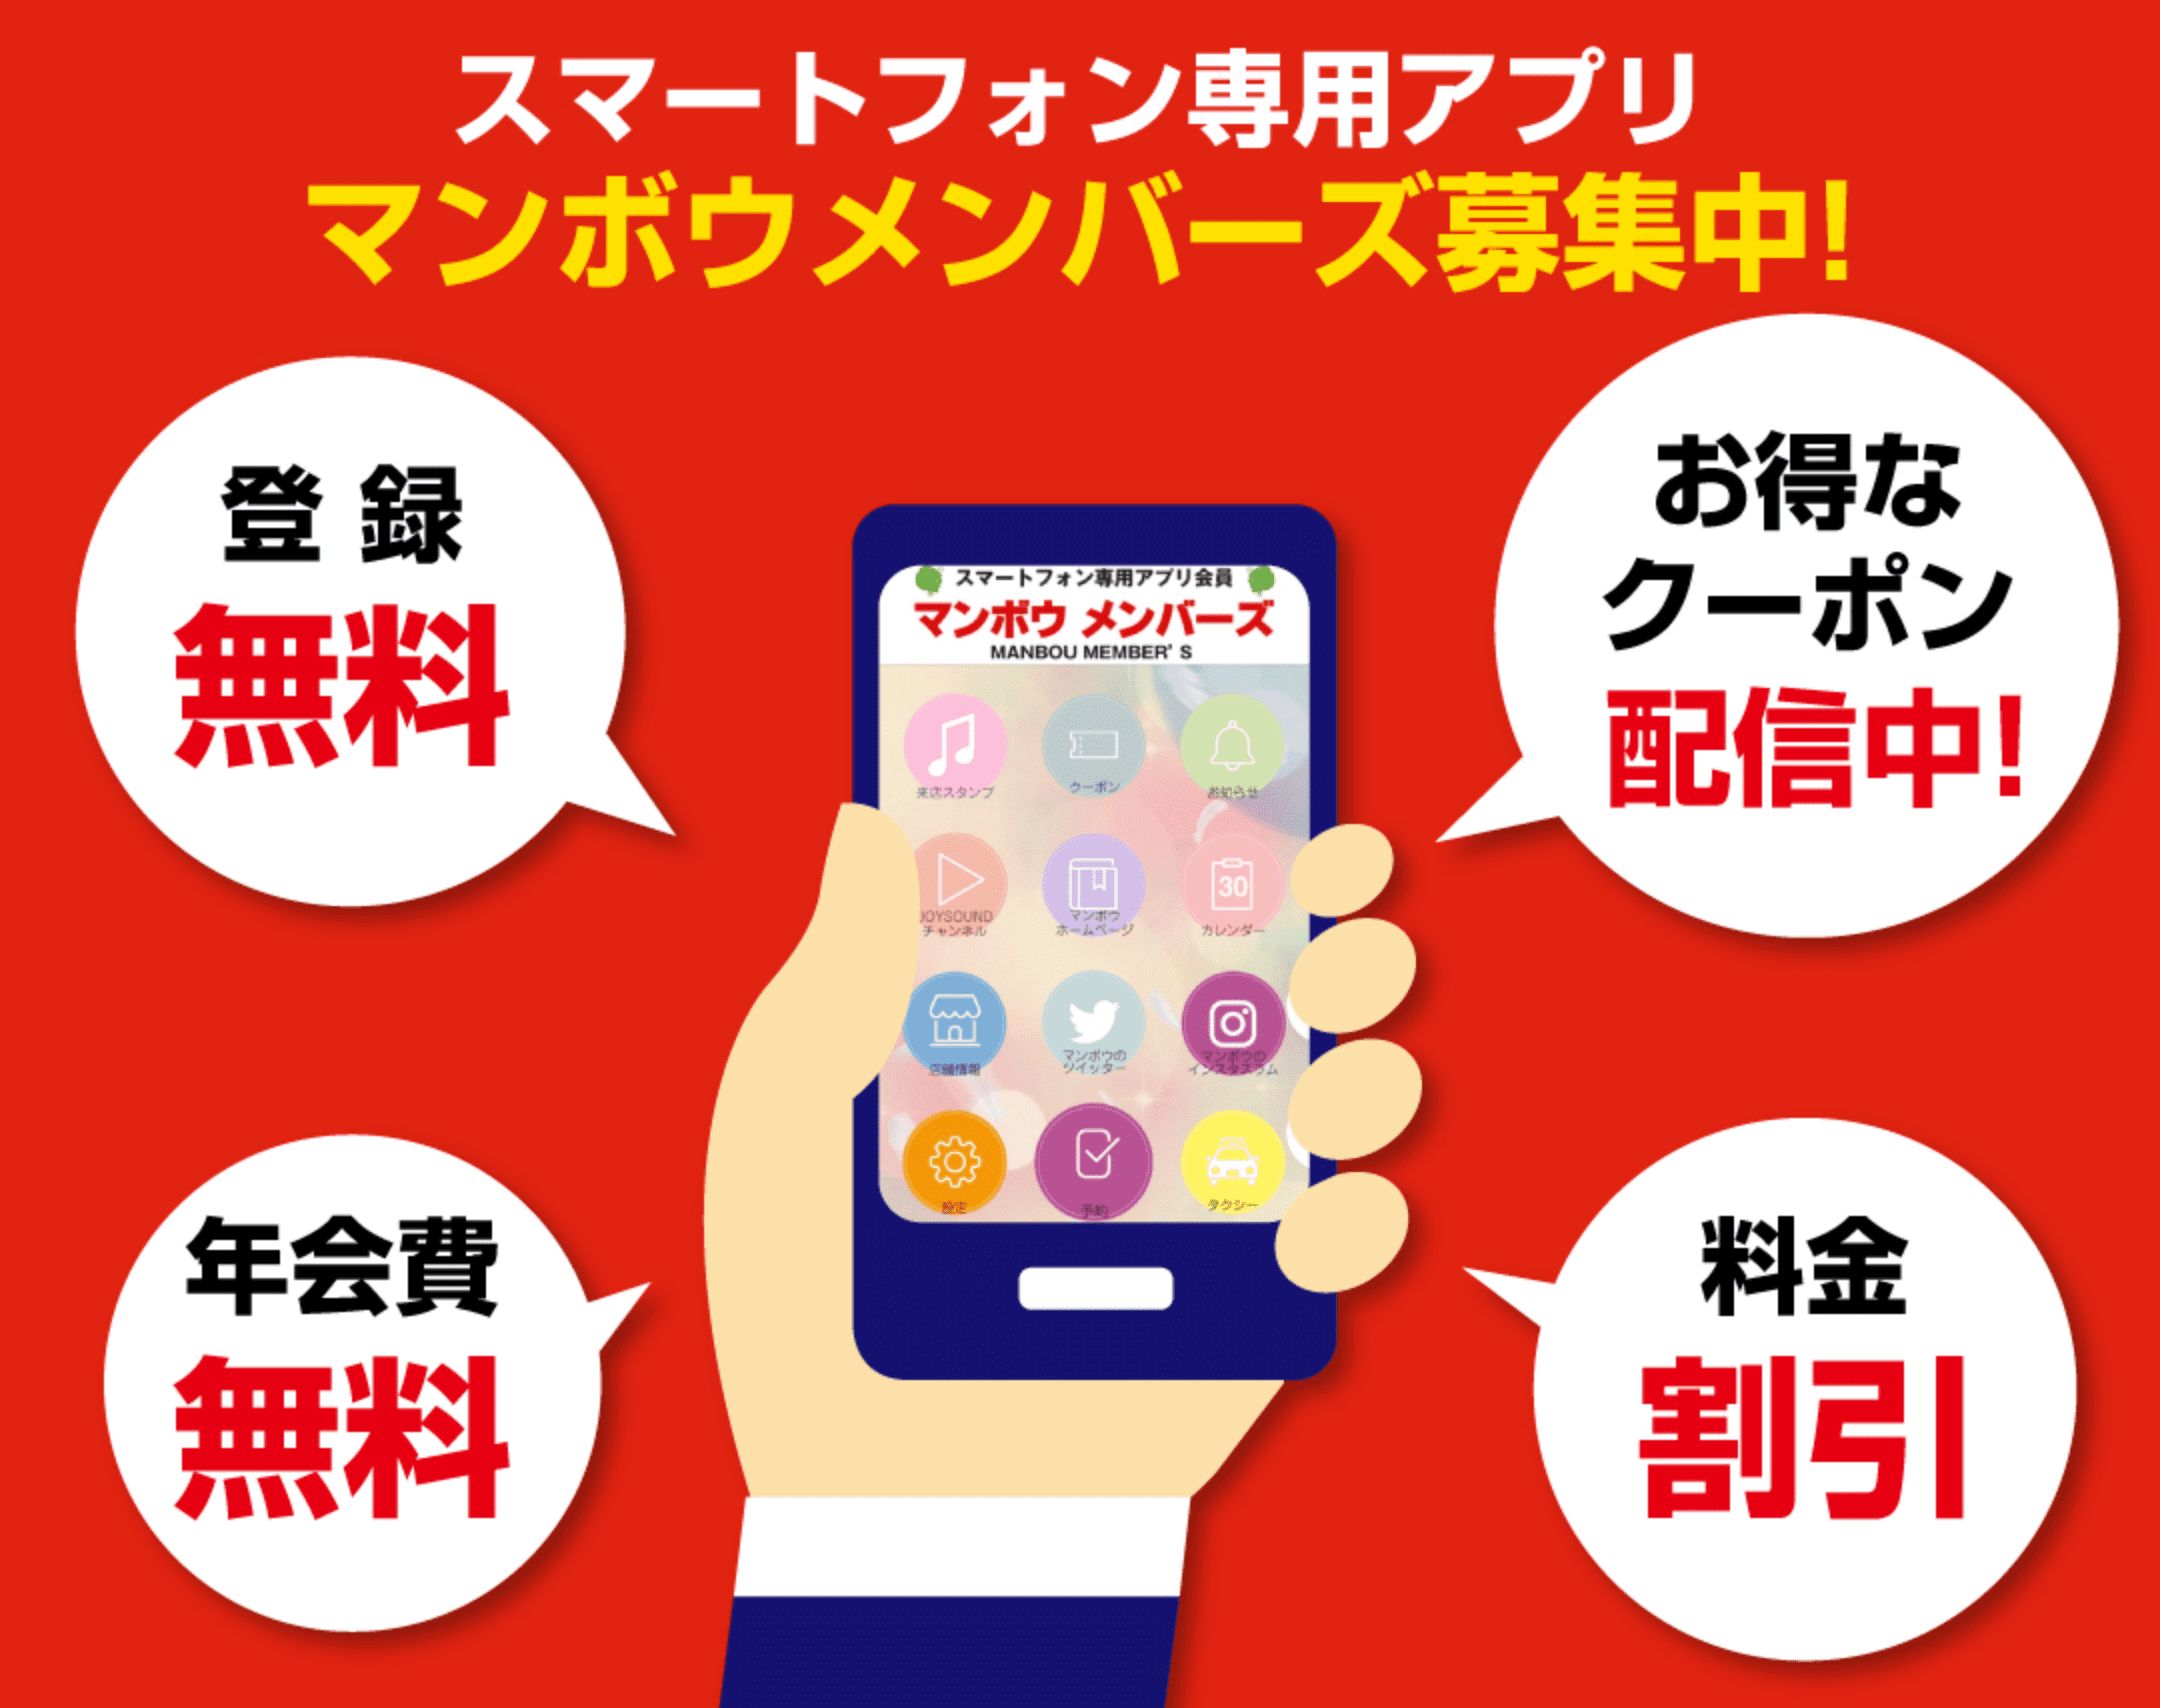 スマートフォン専用アプリ